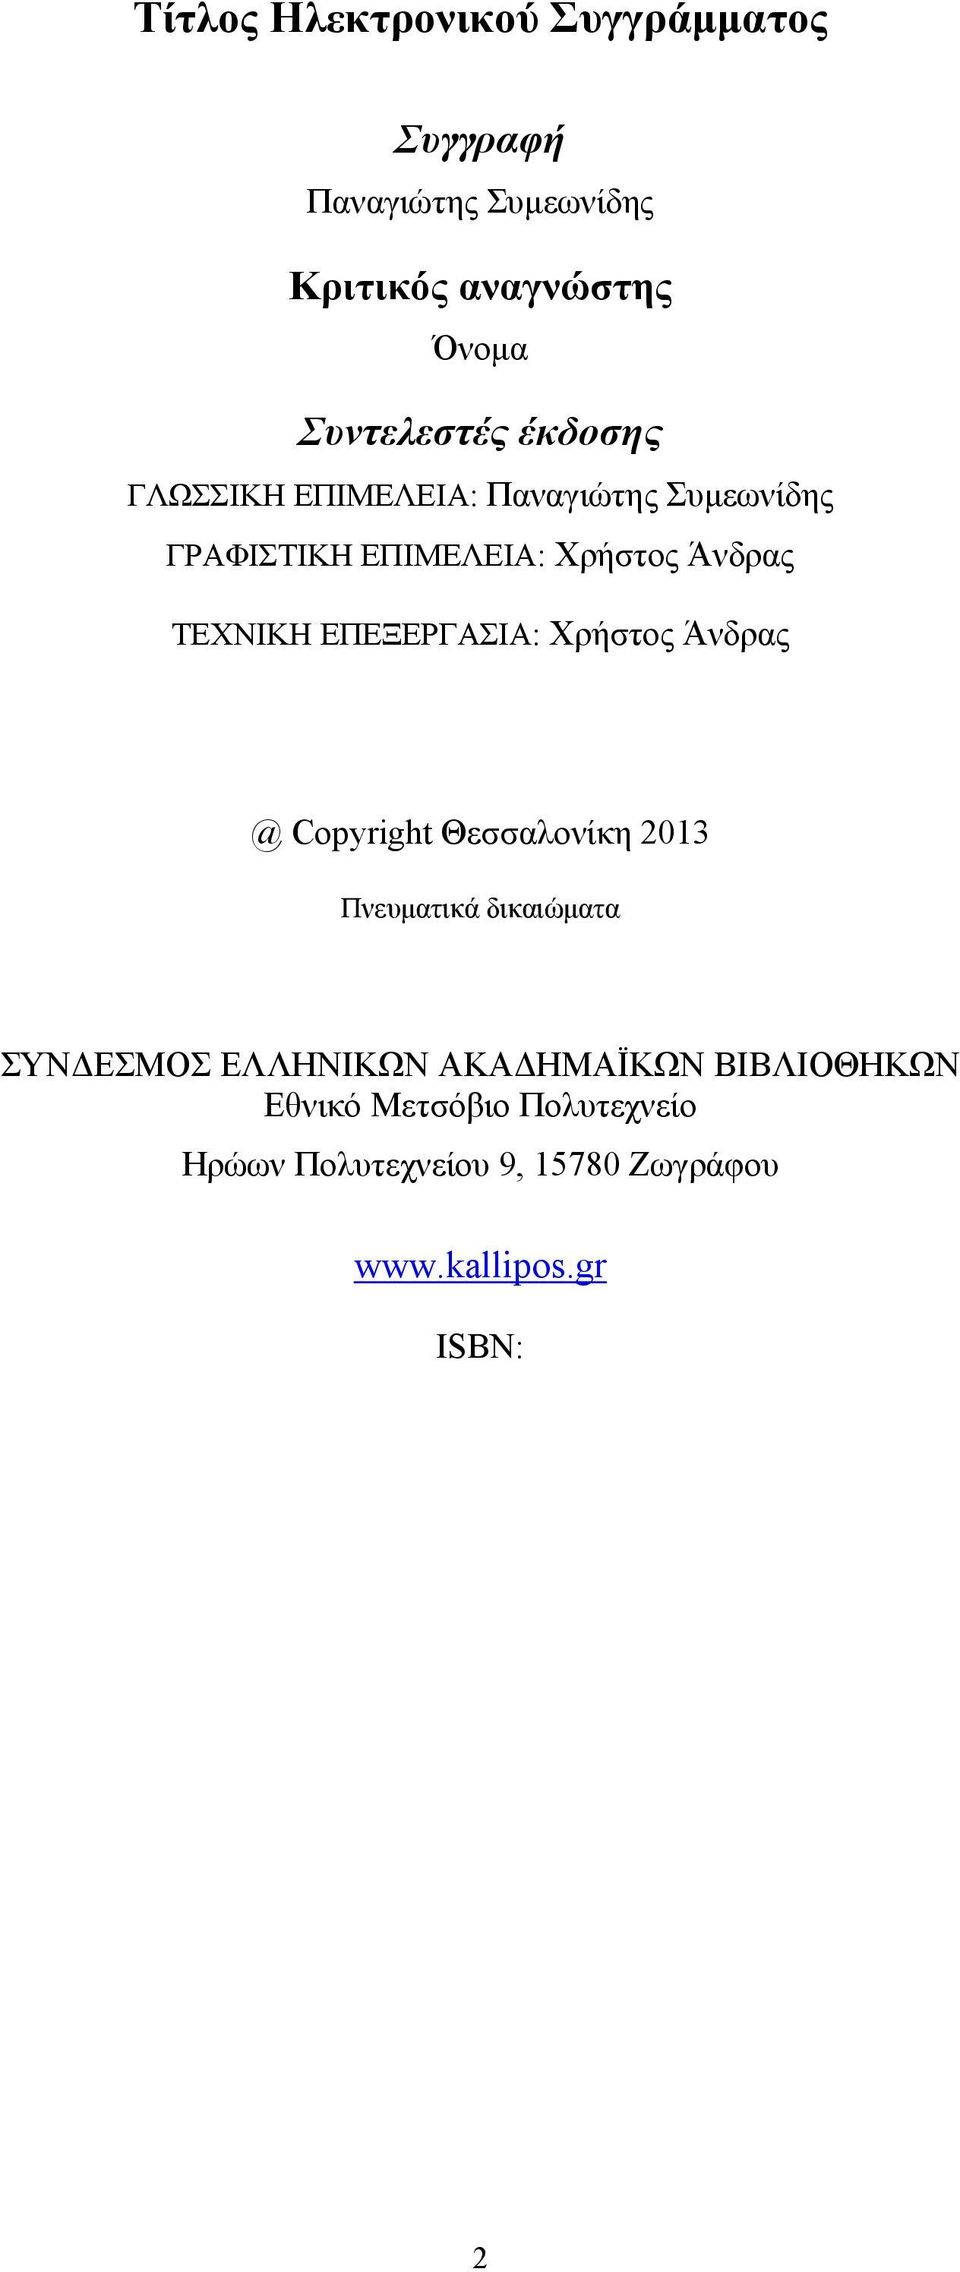 ΕΠΕΞΕΡΓΑΣΙΑ: Χρήστος Άνδρας @ Copyright Θεσσαλονίκη 2013 Πνευματικά δικαιώματα ΣΥΝΔΕΣΜΟΣ ΕΛΛΗΝΙΚΩΝ